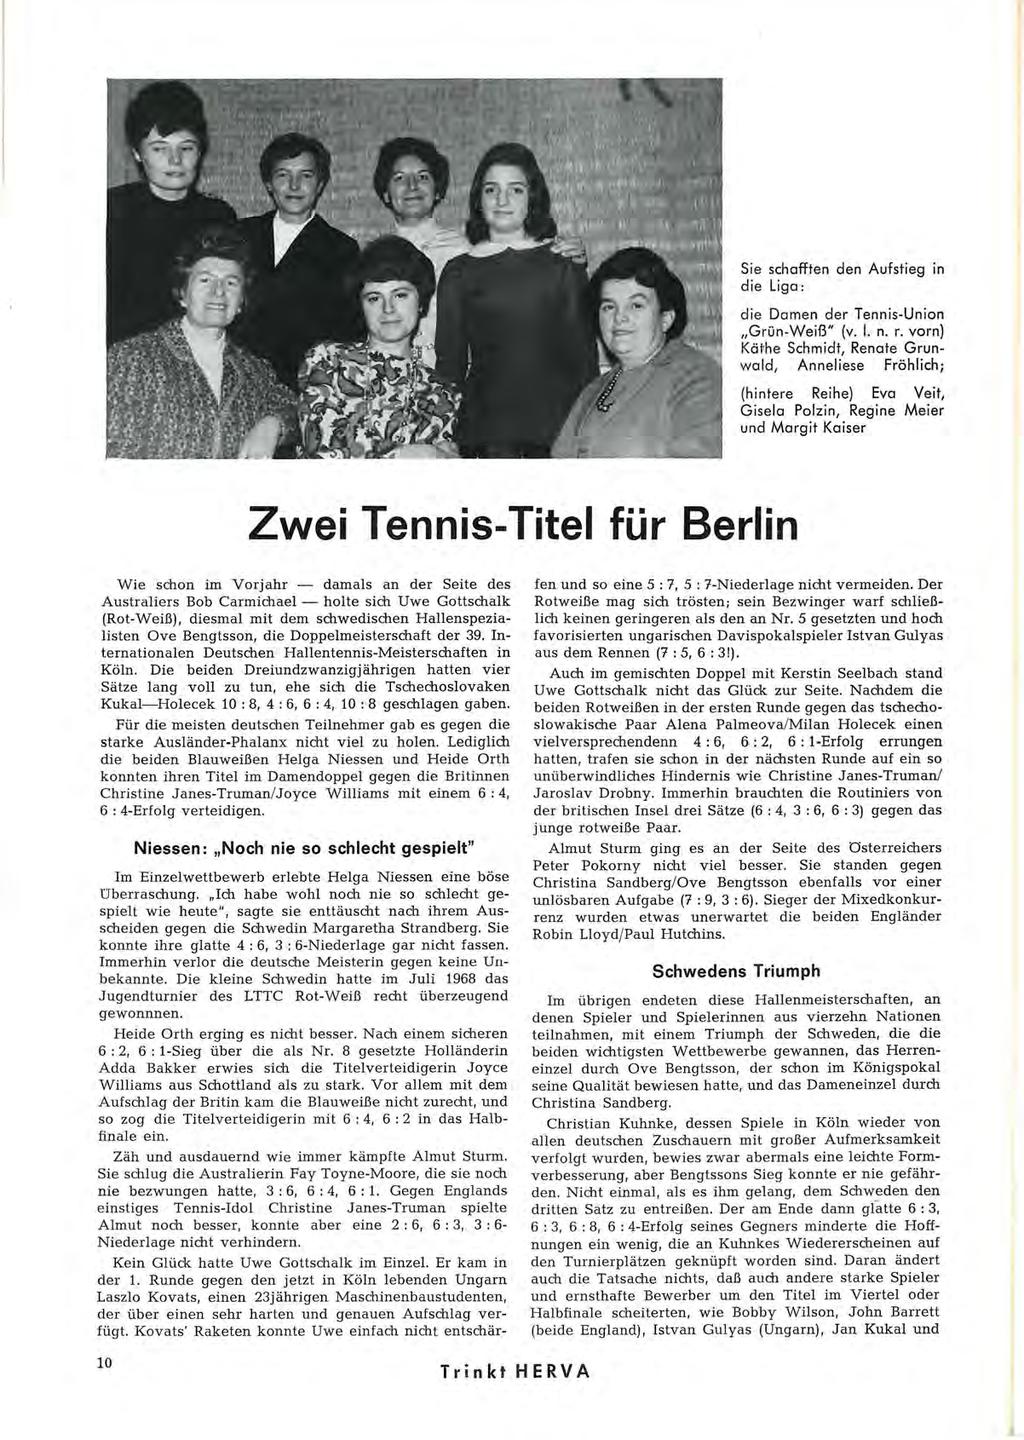 Sie schafften den Aufstieg in die Liga: die Damen der Tennis-Union "Grün-Weiß" (v. I. n. r.